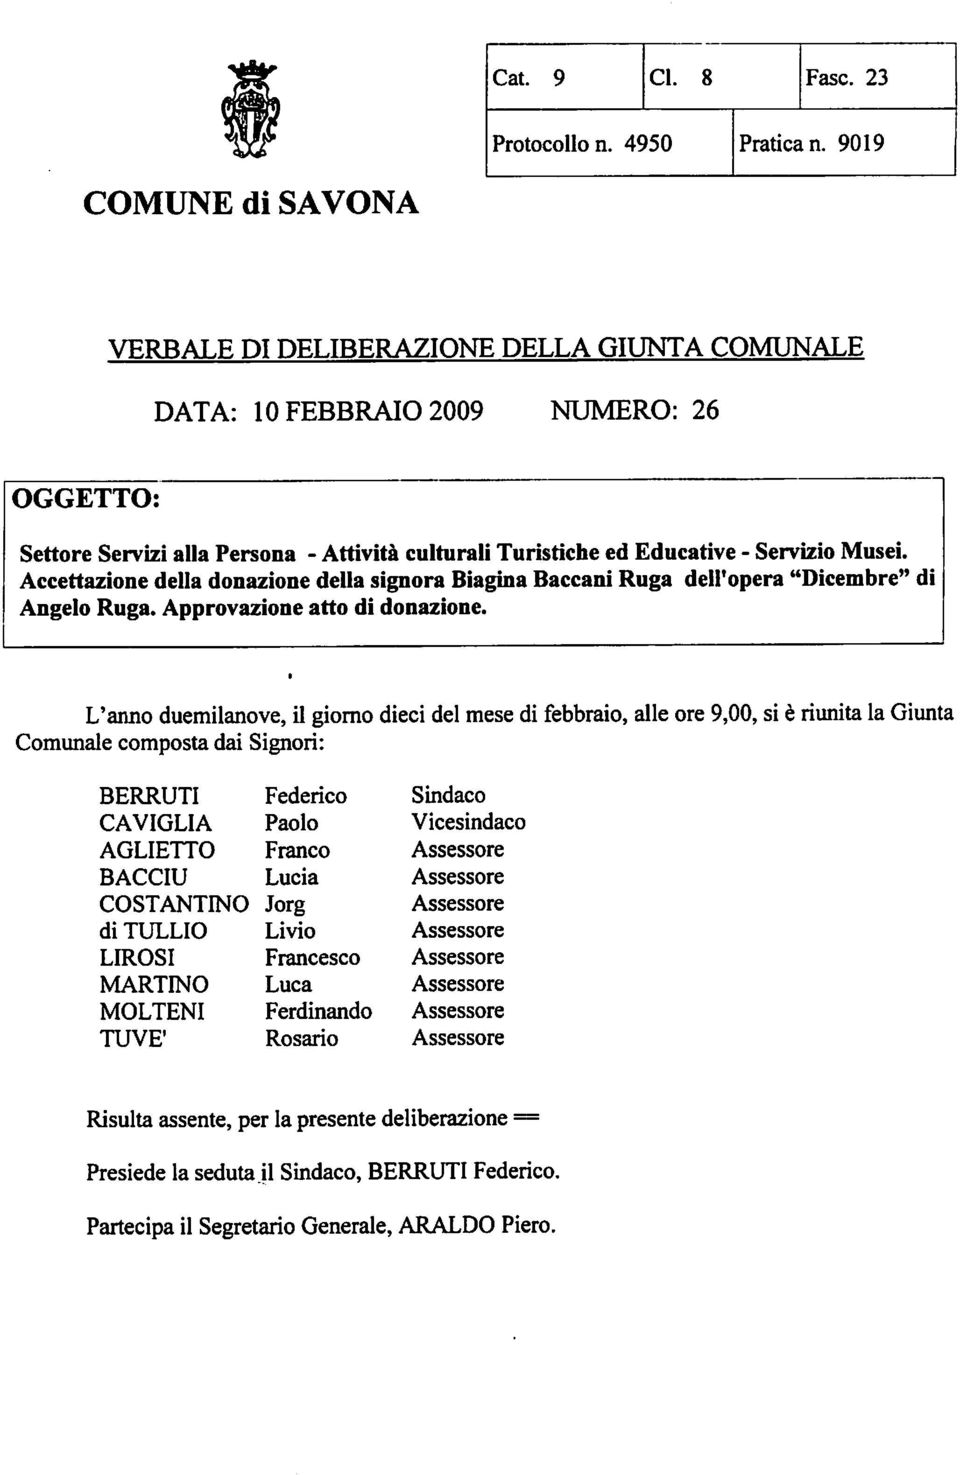 Musei. Accettazione della donazione della signora Biagina Baccani Ruga dell'opera "Dicembre" di Angelo Ruga. Approvazione atto di donazione.